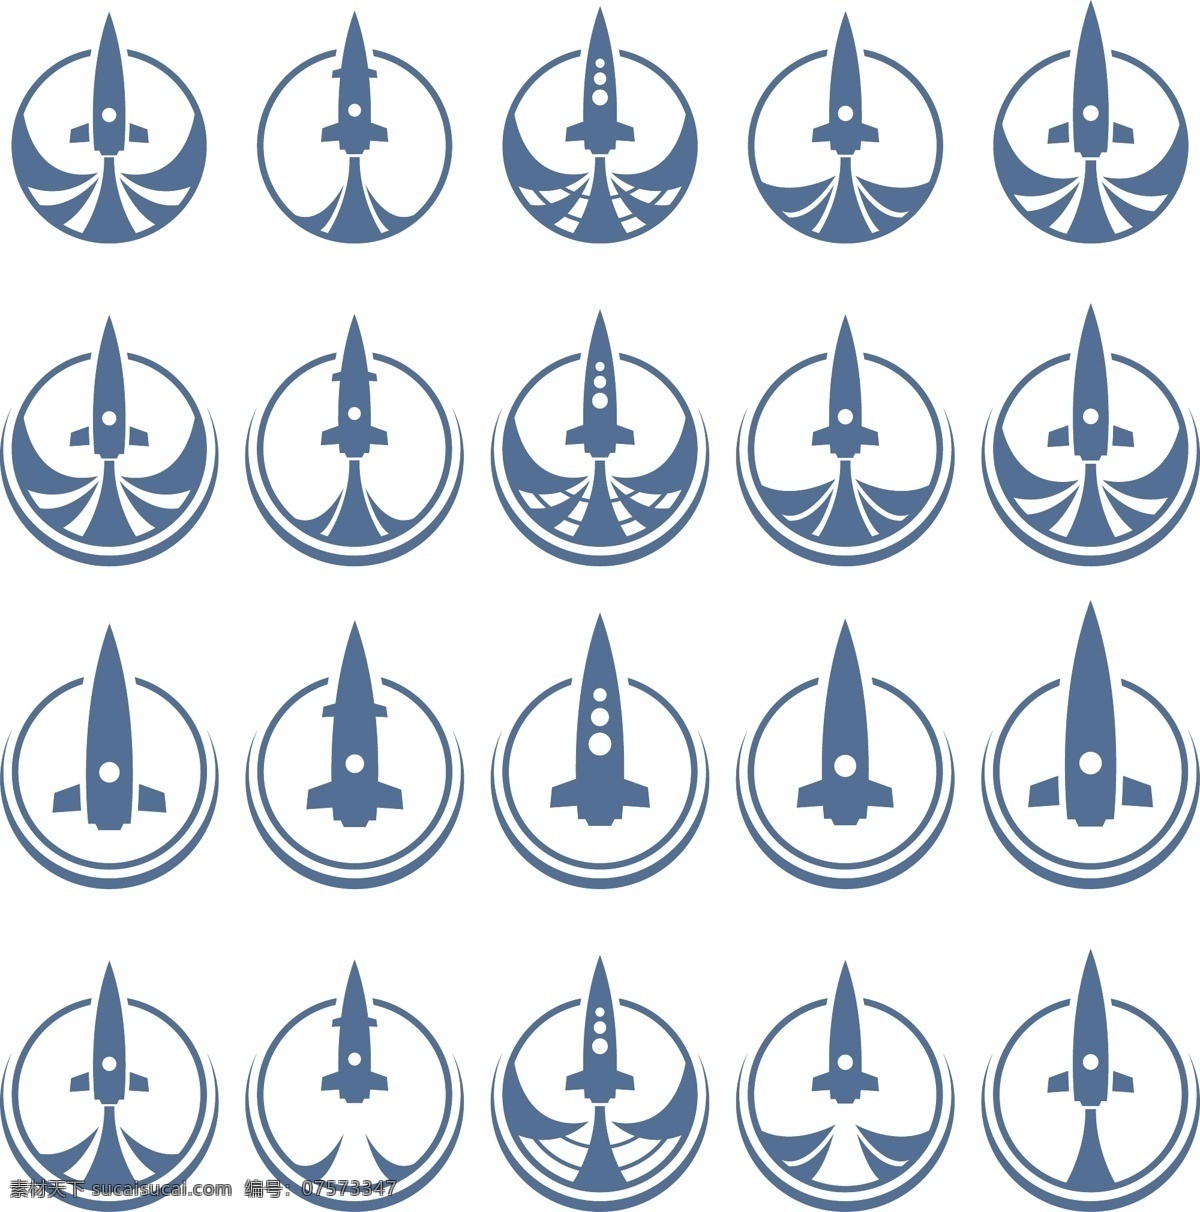 火箭图标 火箭app app图标 手机app 火箭icon 飞船图标 火箭 图标 宇宙飞船图标 宇宙飞船 航空图标 航空icon